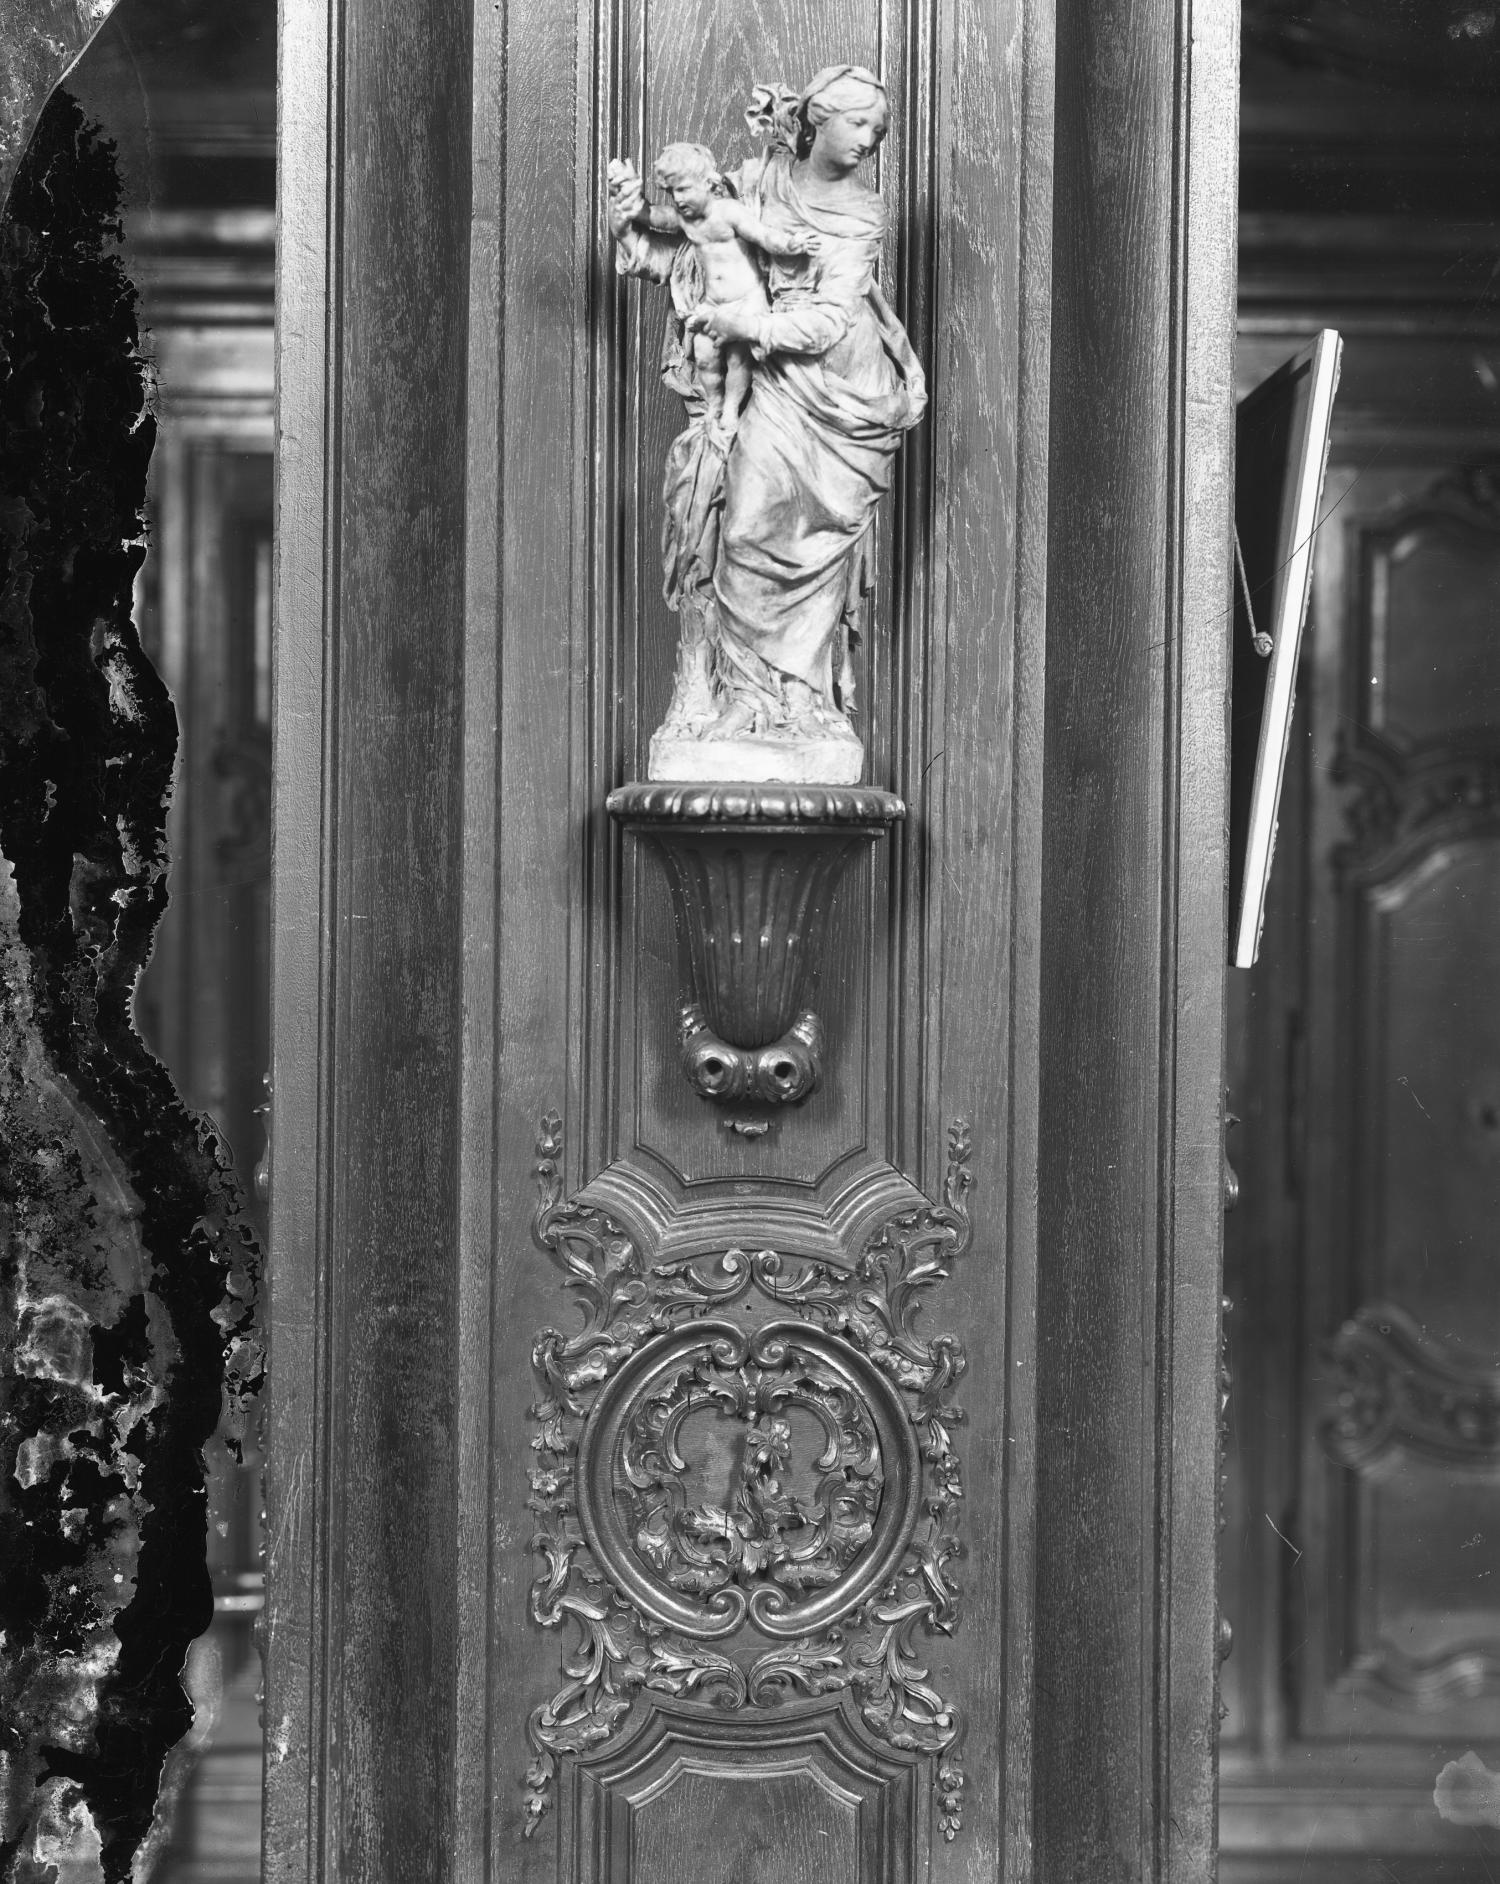 [Salle des archives de l'hospice de la Charité : maquette en terre cuite (?) de la Vierge à l'Enfant, dite "Notre Dame des Grâces"]